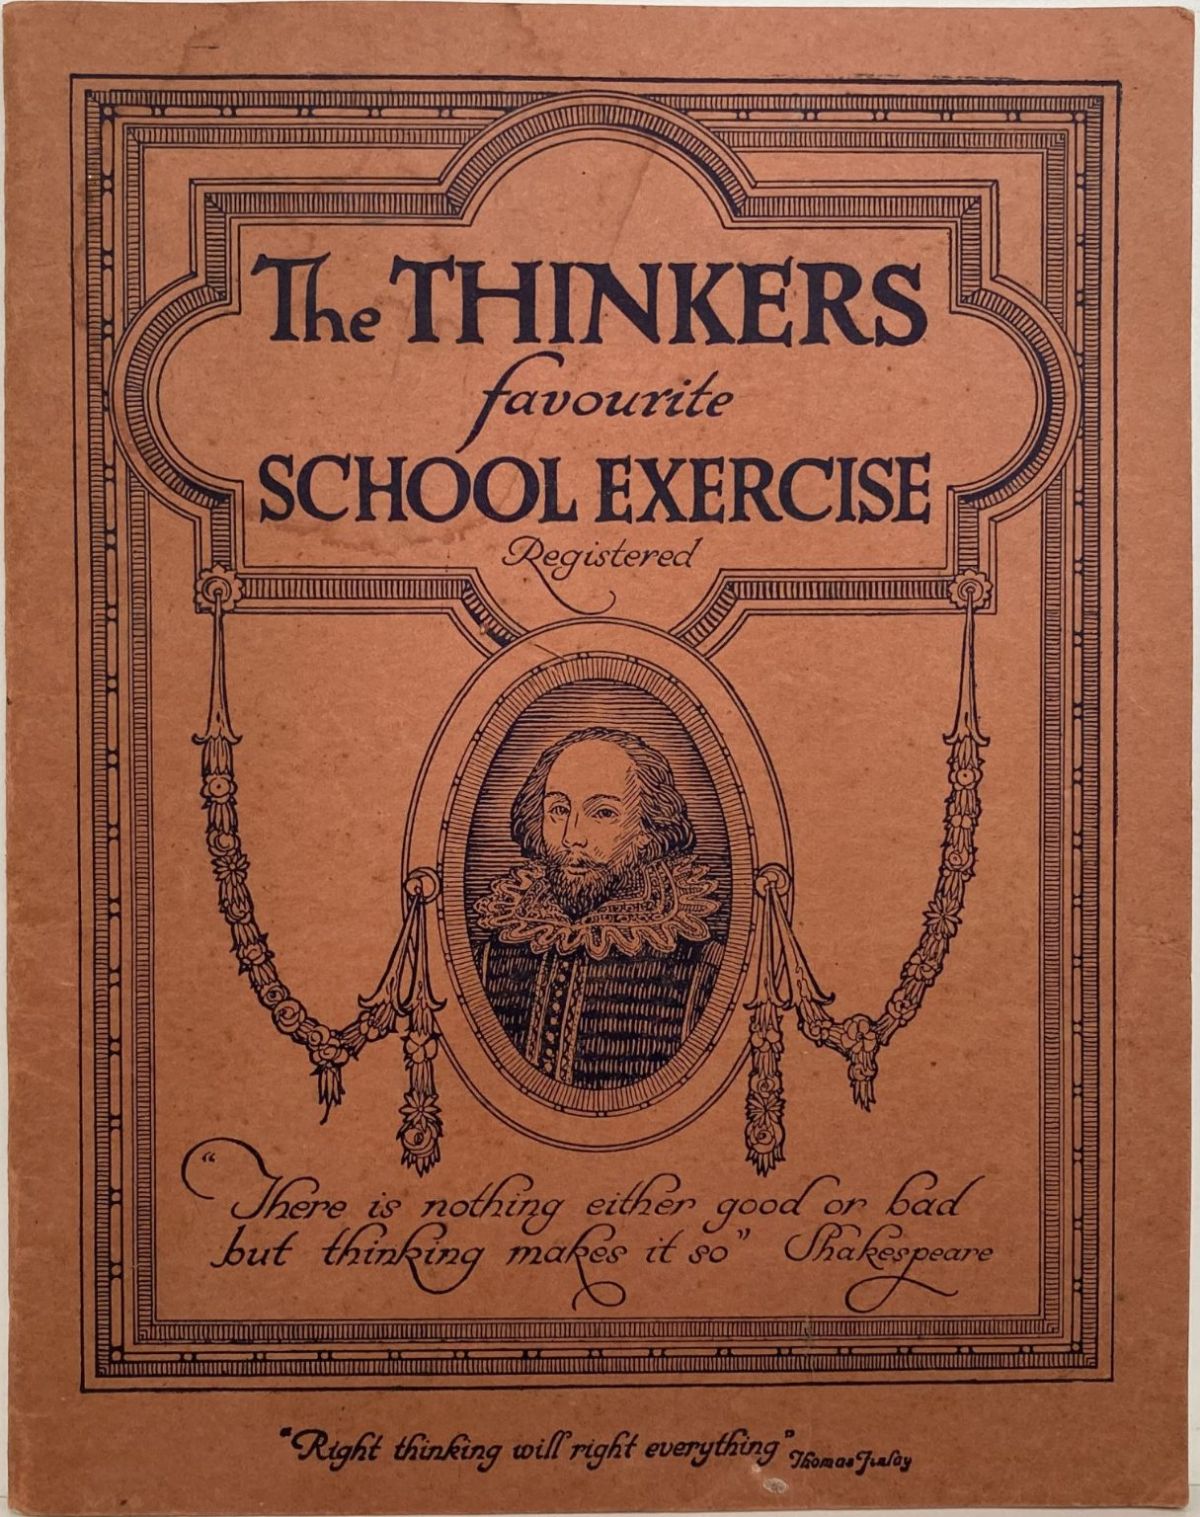 Vintage School Exercise Book circa 1940